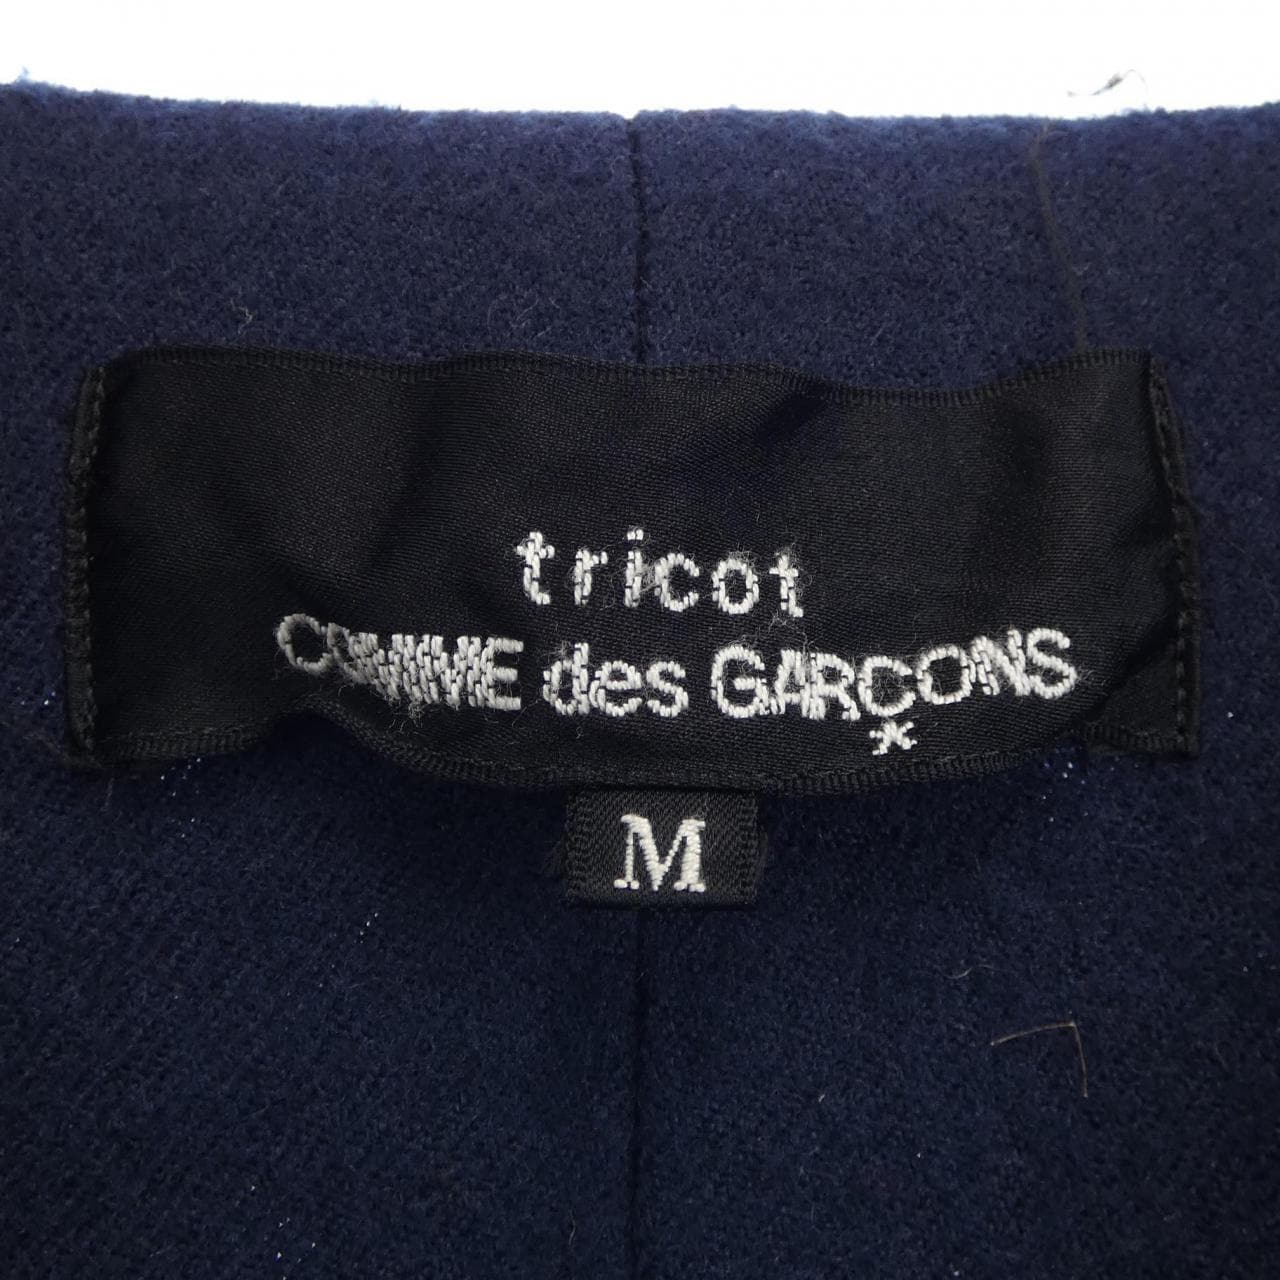 【ヴィンテージ】トリココムデギャルソン tricot GARCONS ジャケット